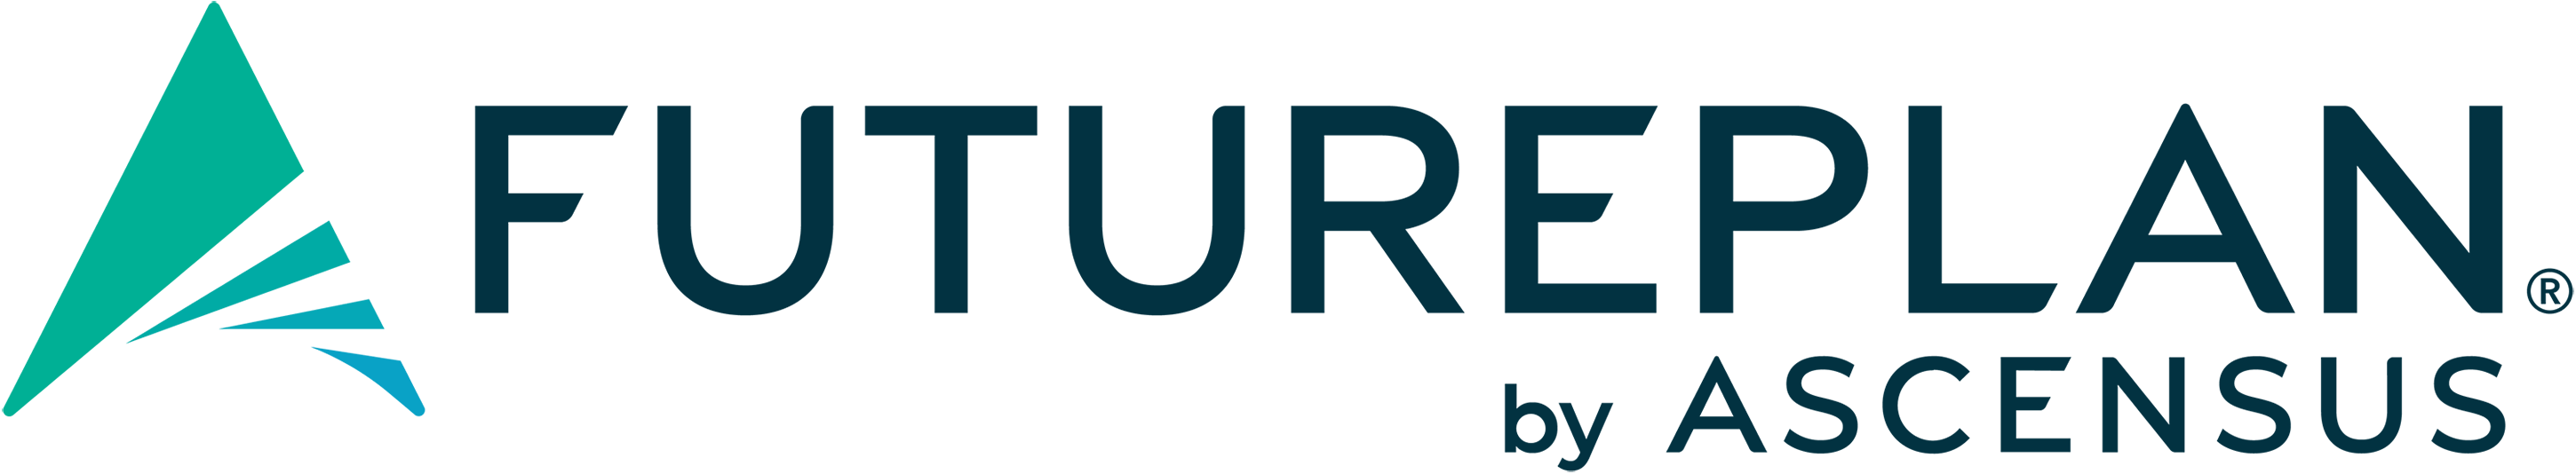 FuturePlan by Ascensus Logo